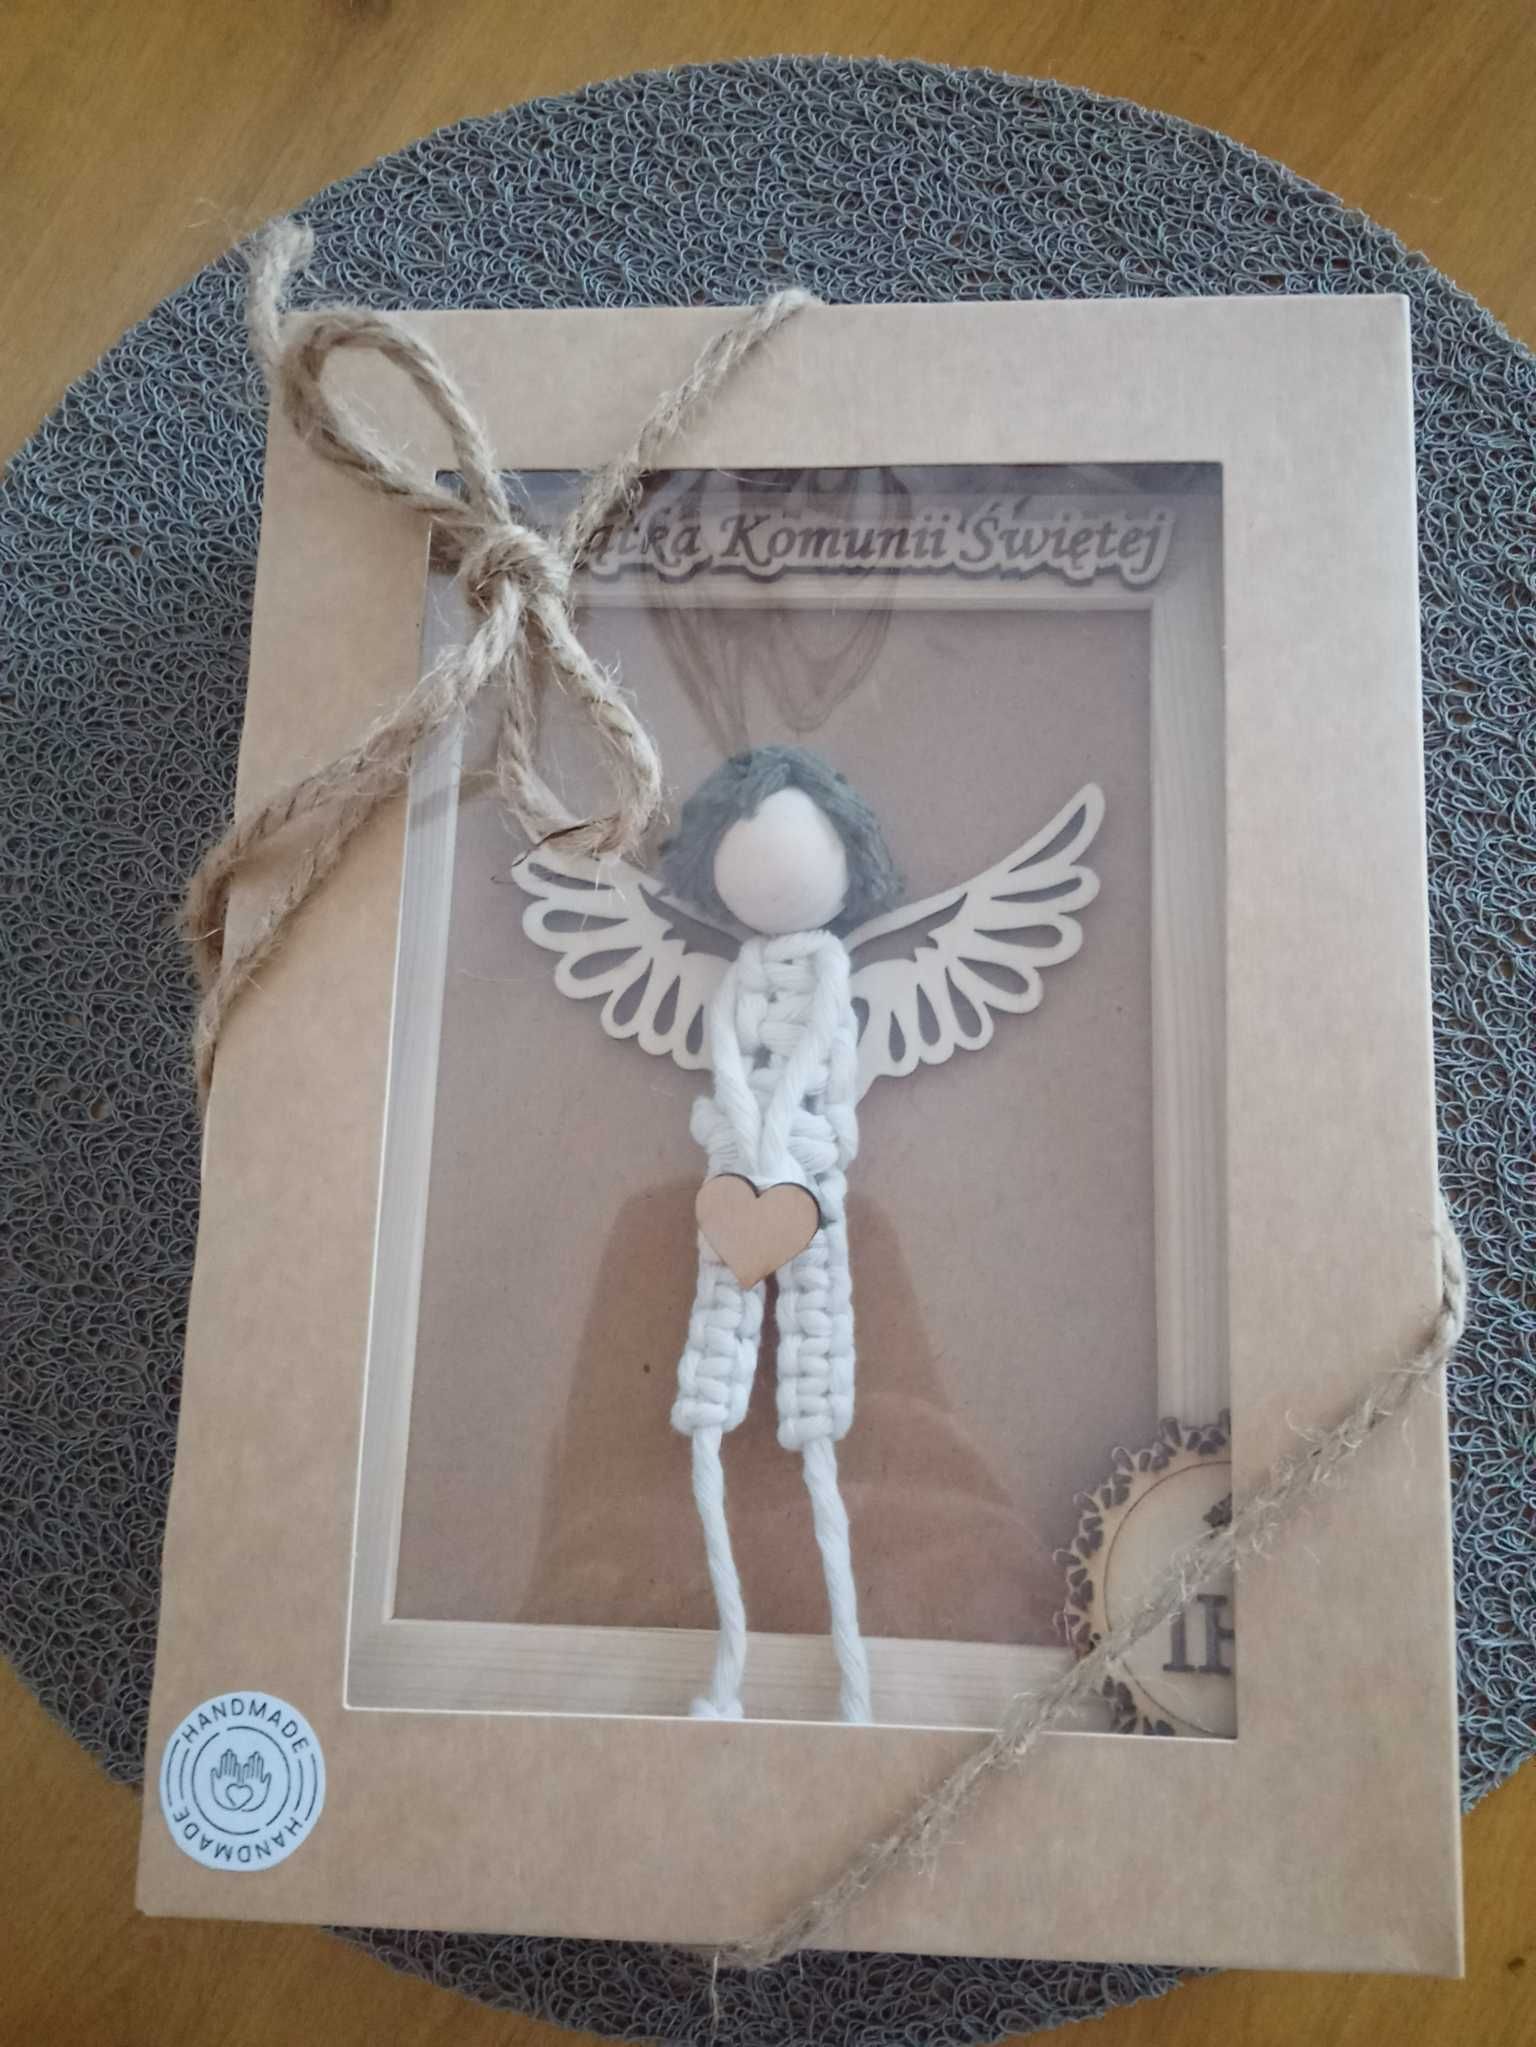 Anioł chłopak makrama pamiątka Komunii Świętej prezent handmade